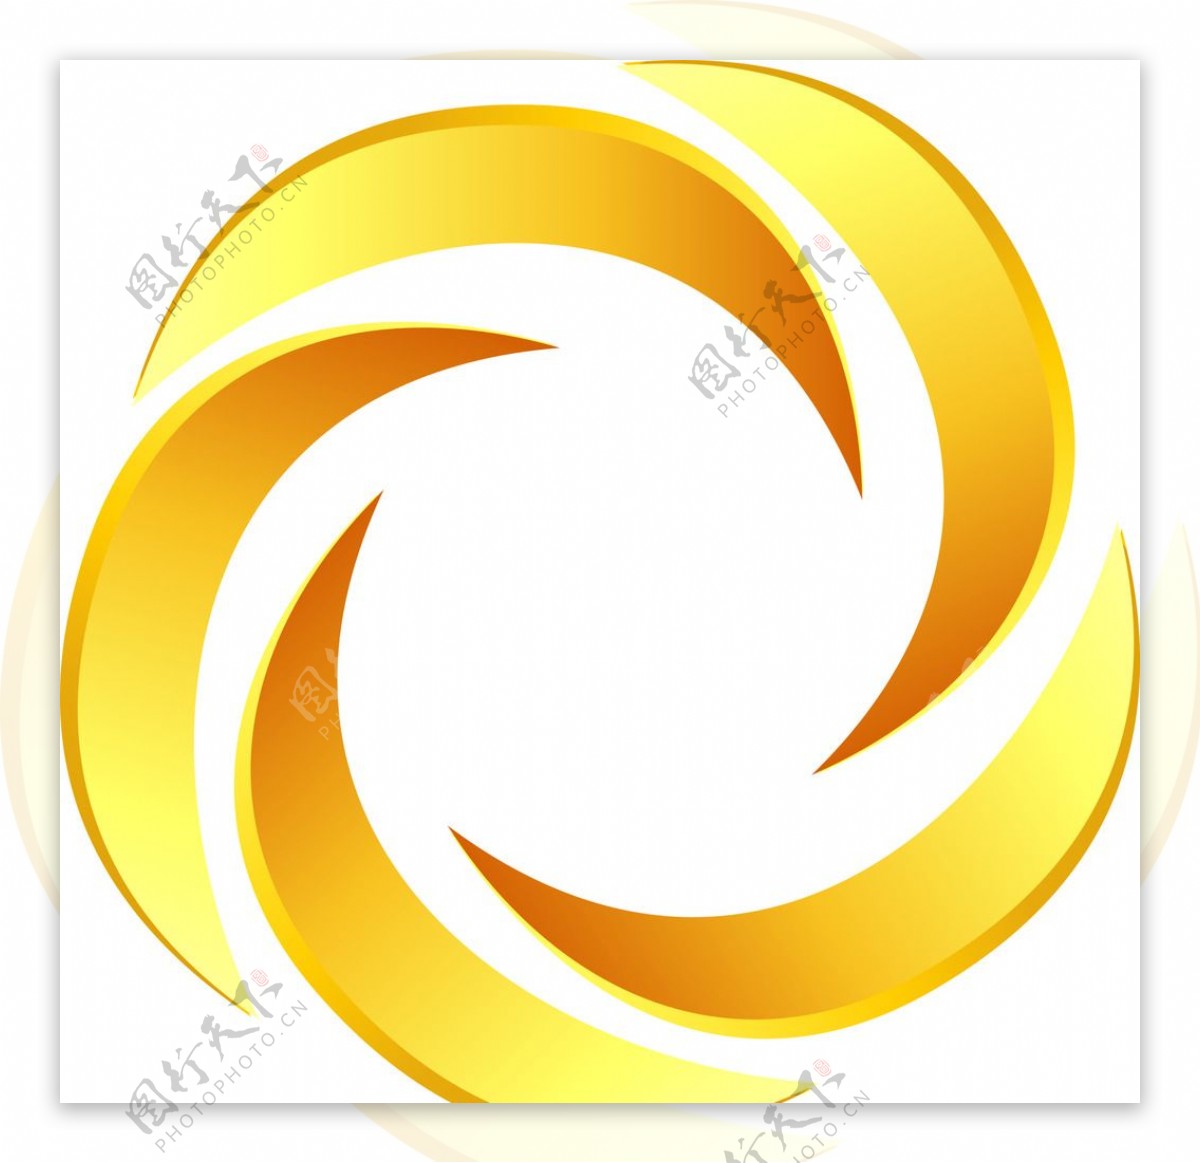 科技环保通讯标志圆形logo